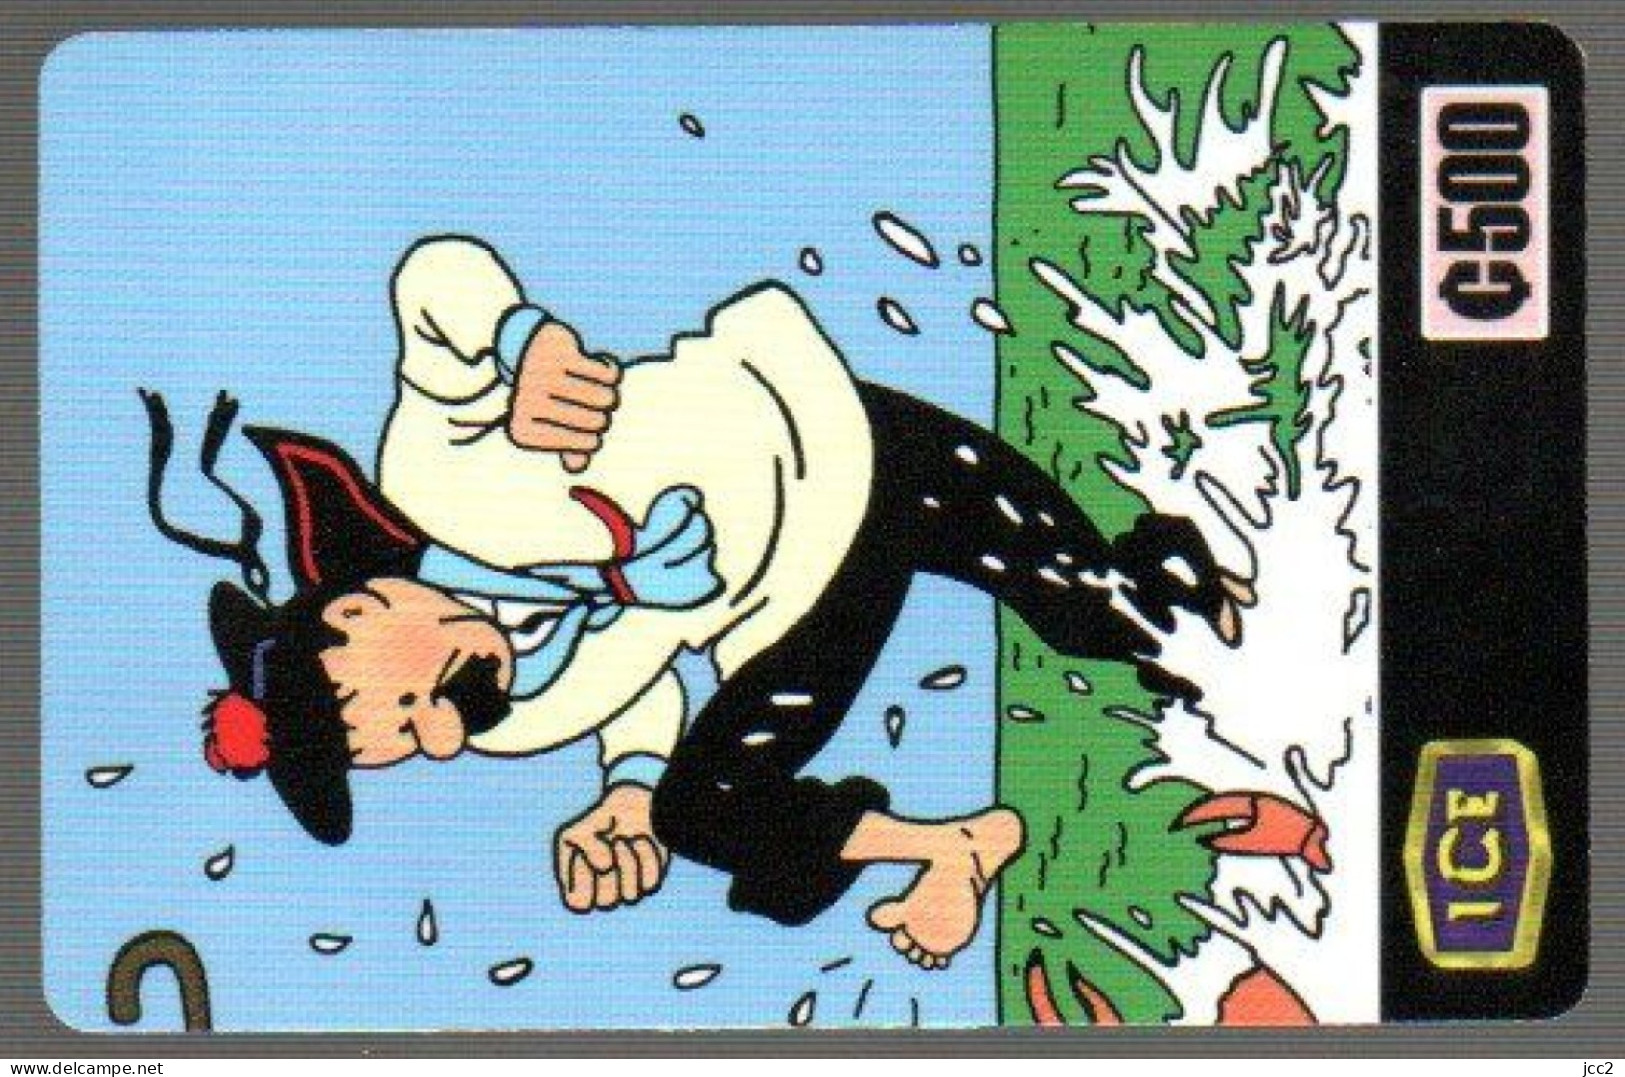 Tintin & Milou & Les Dupont - BD